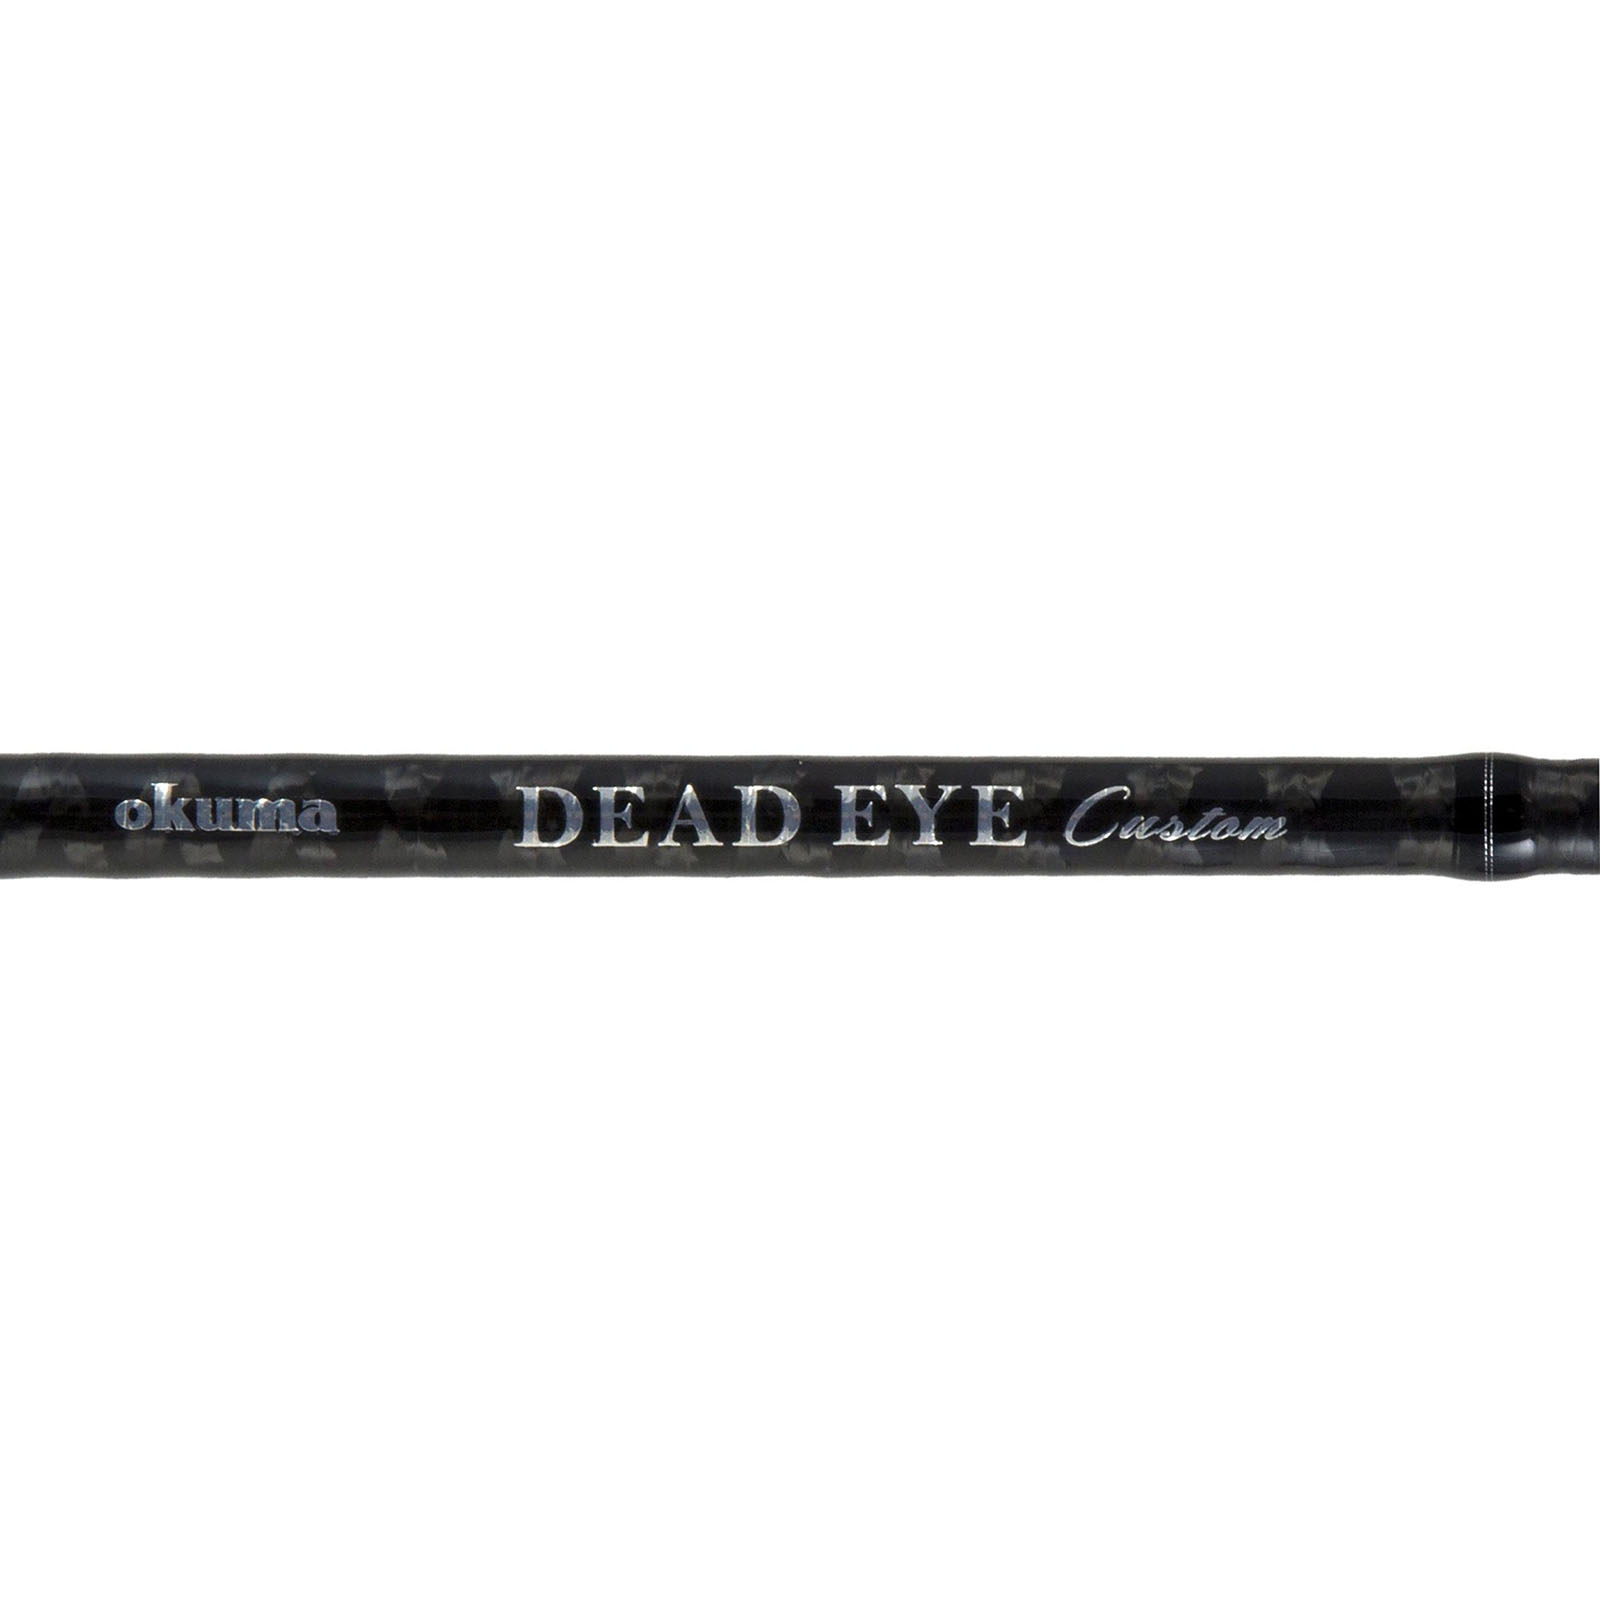 Okuma Dead Eye Classic “A” Spinning Rod | DEC-S-661MFTa | FishUSA